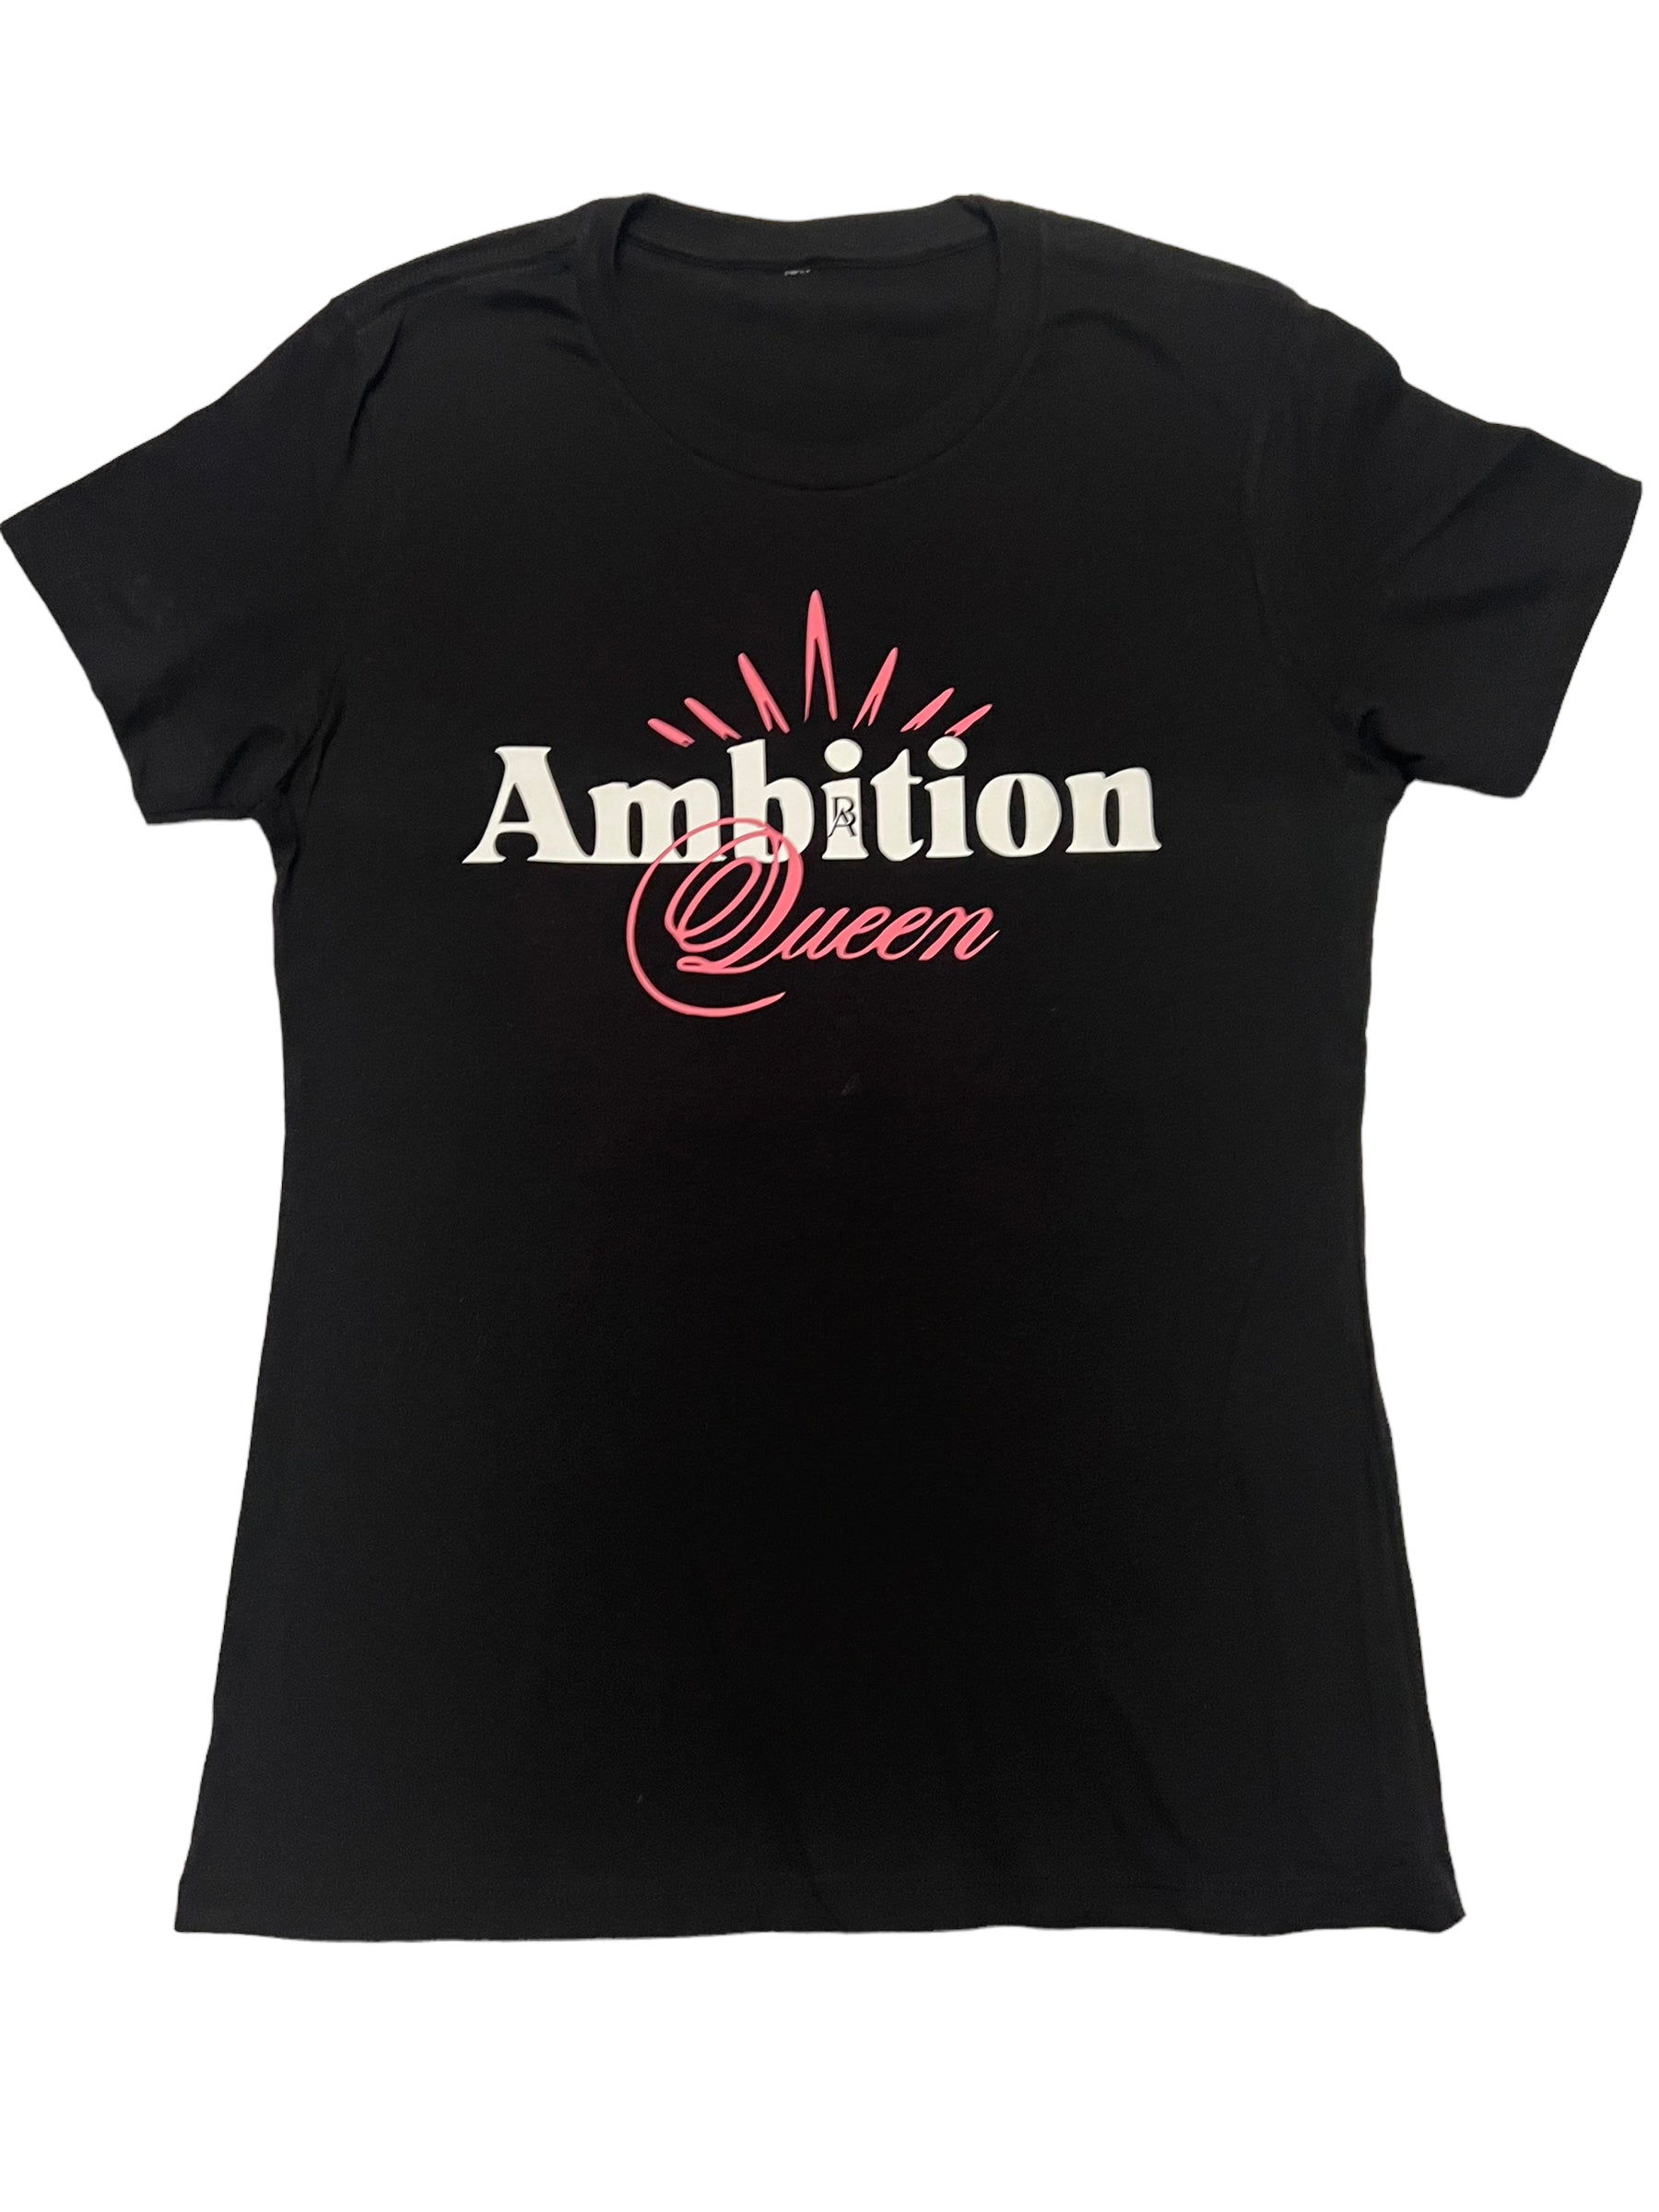 Empowerment Reigns: Ambition Queen T-Shirt - BossAmbitionz XL / Black